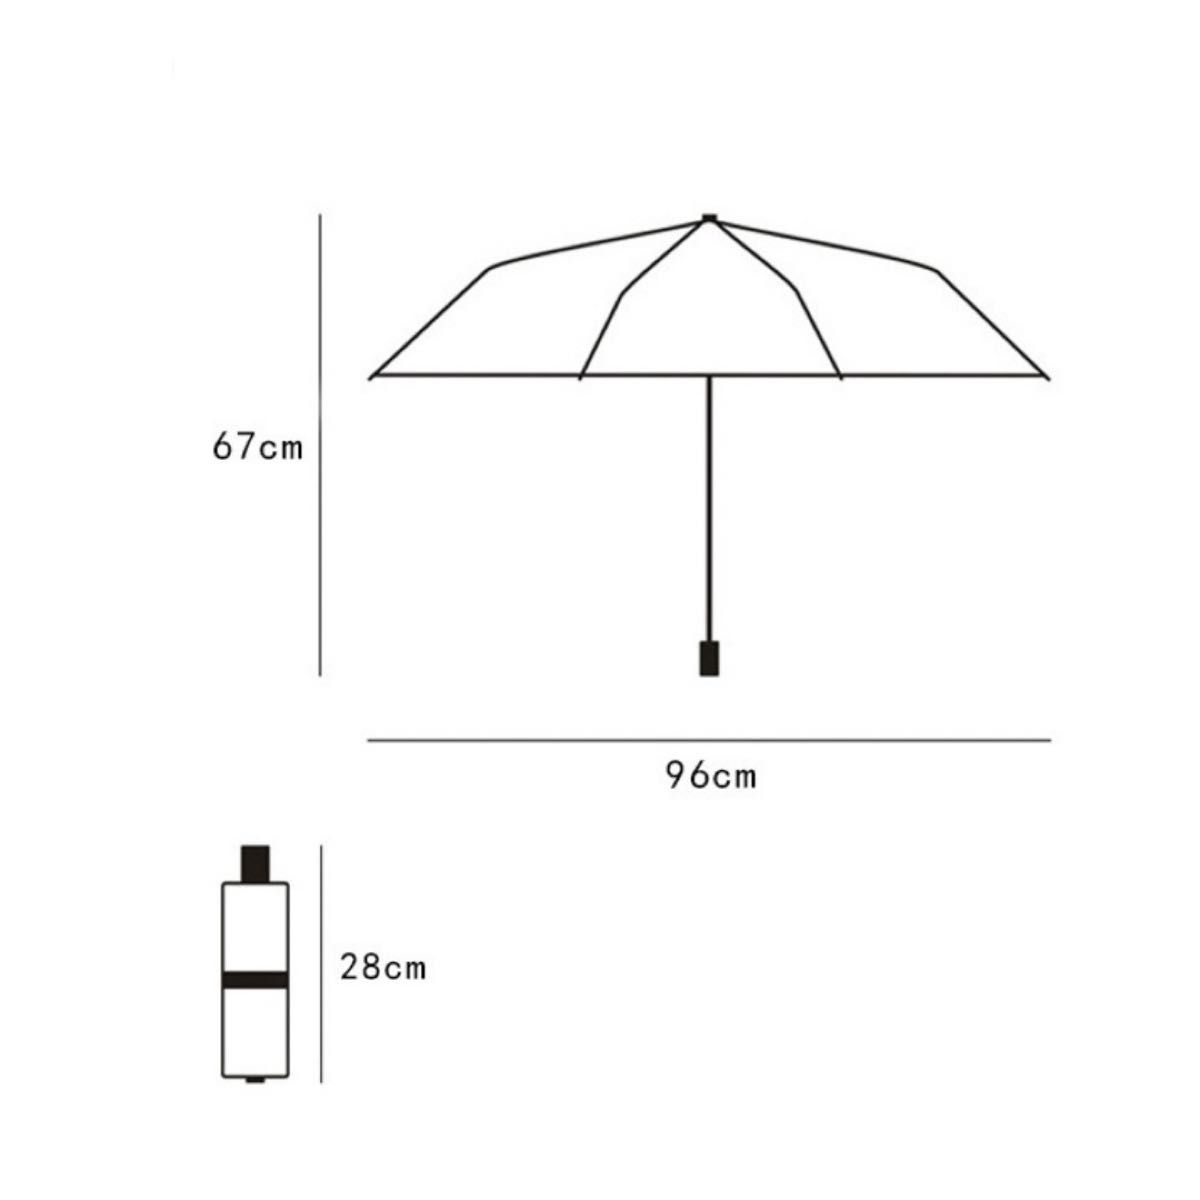 【ブラック2個】日傘 折りたたみ傘 手動開閉 晴雨兼用 撥水 UVカット 雨傘 雨具